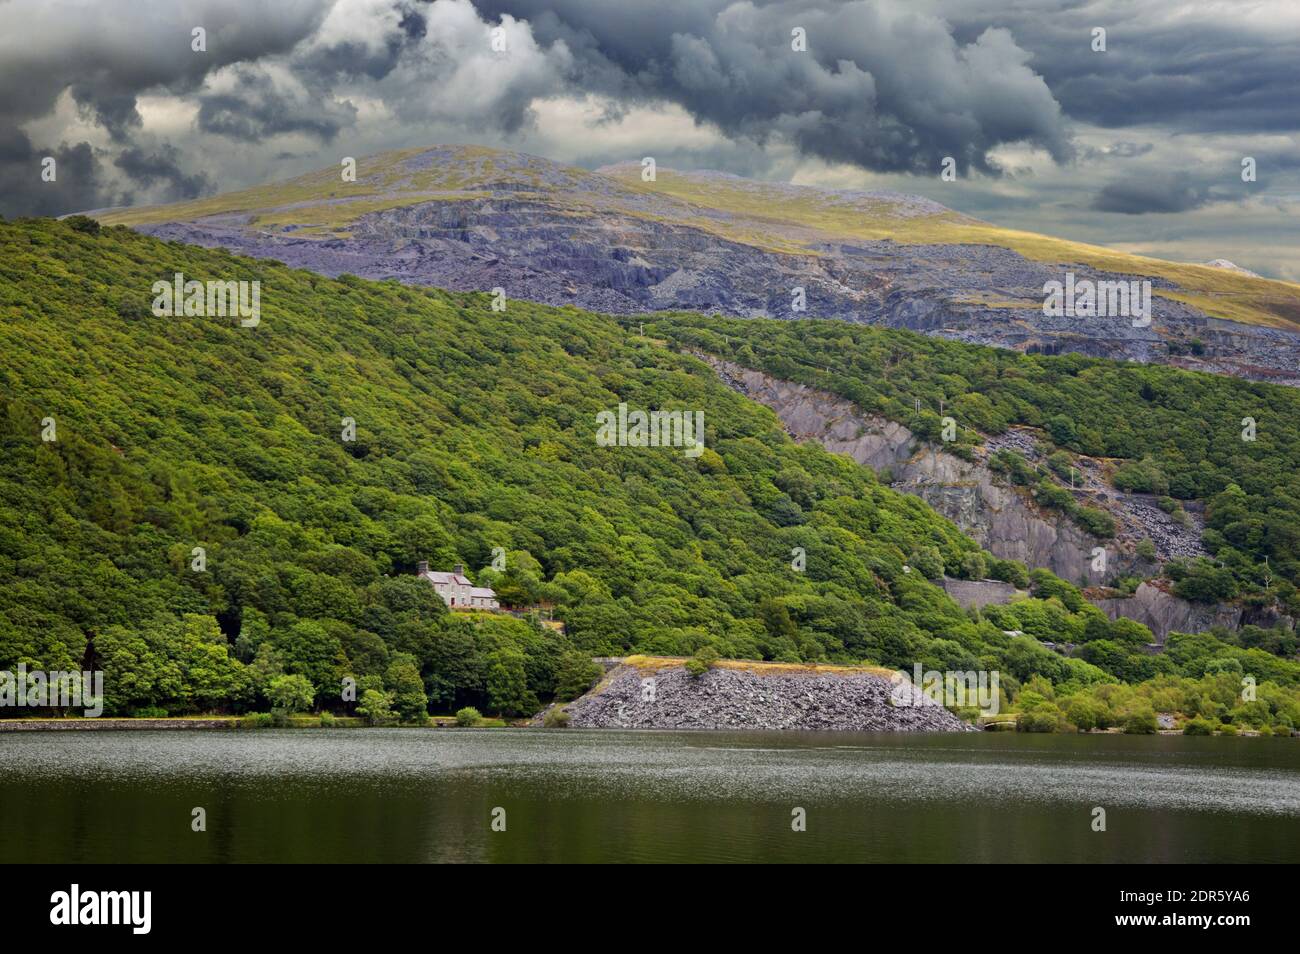 Coed Dinorwig ist ein beeindruckender alter Wald auf einem Hügel mit Blick auf Llyn Padarn neben Llanberis im Snowdonia Nationalpark. Stockfoto